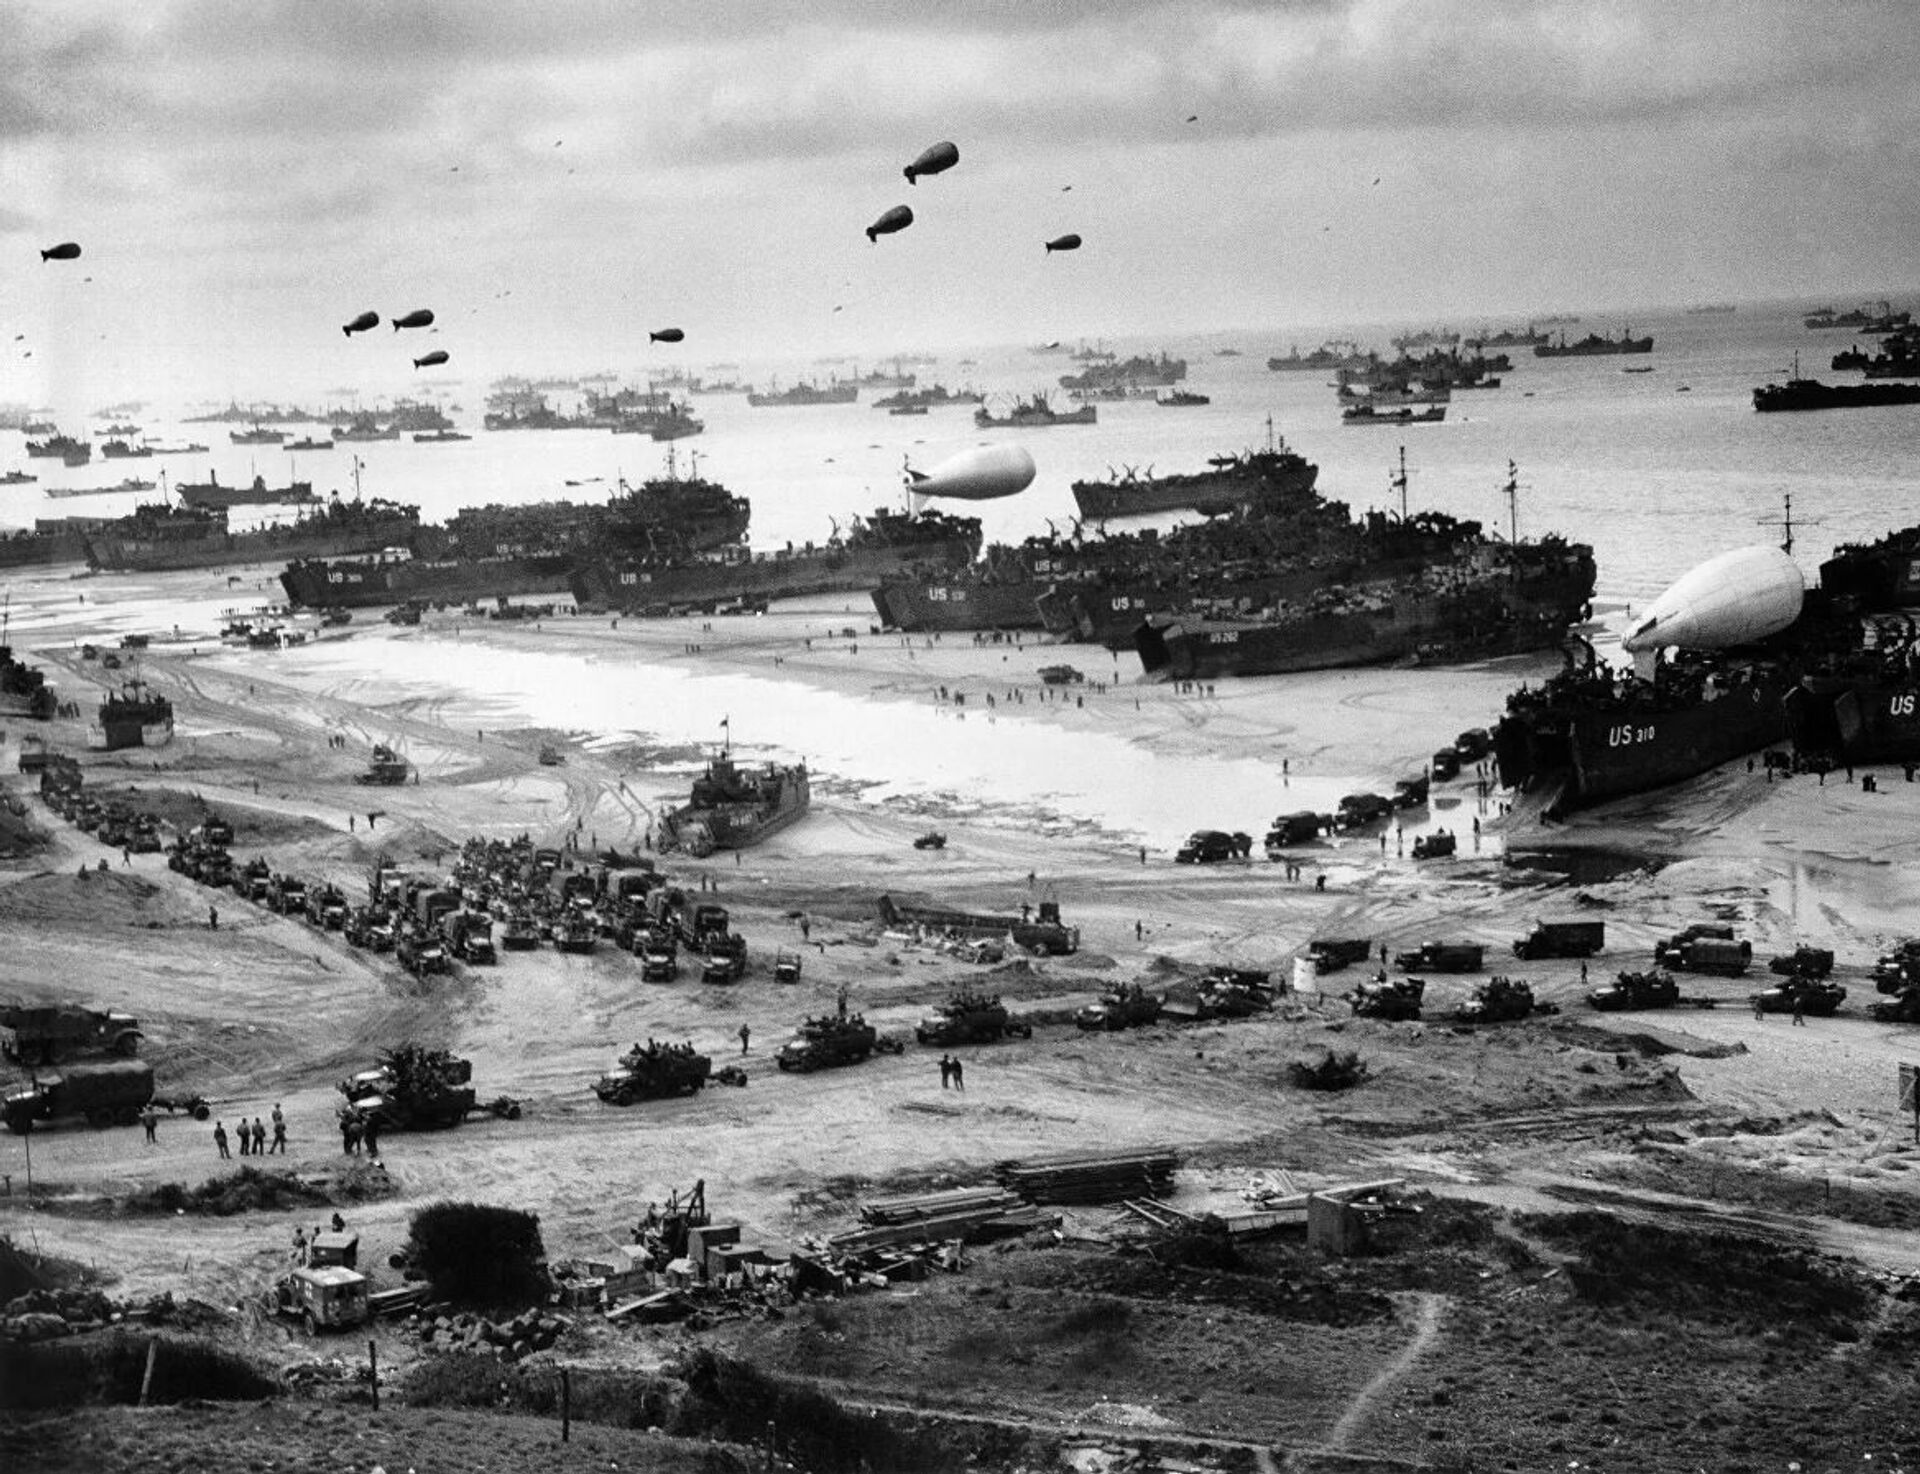 Высадка американских военных на десантном корабле на нормандский пляж Омаха во Франции. 6 июня 1944 года - Sputnik Latvija, 1920, 01.06.2021